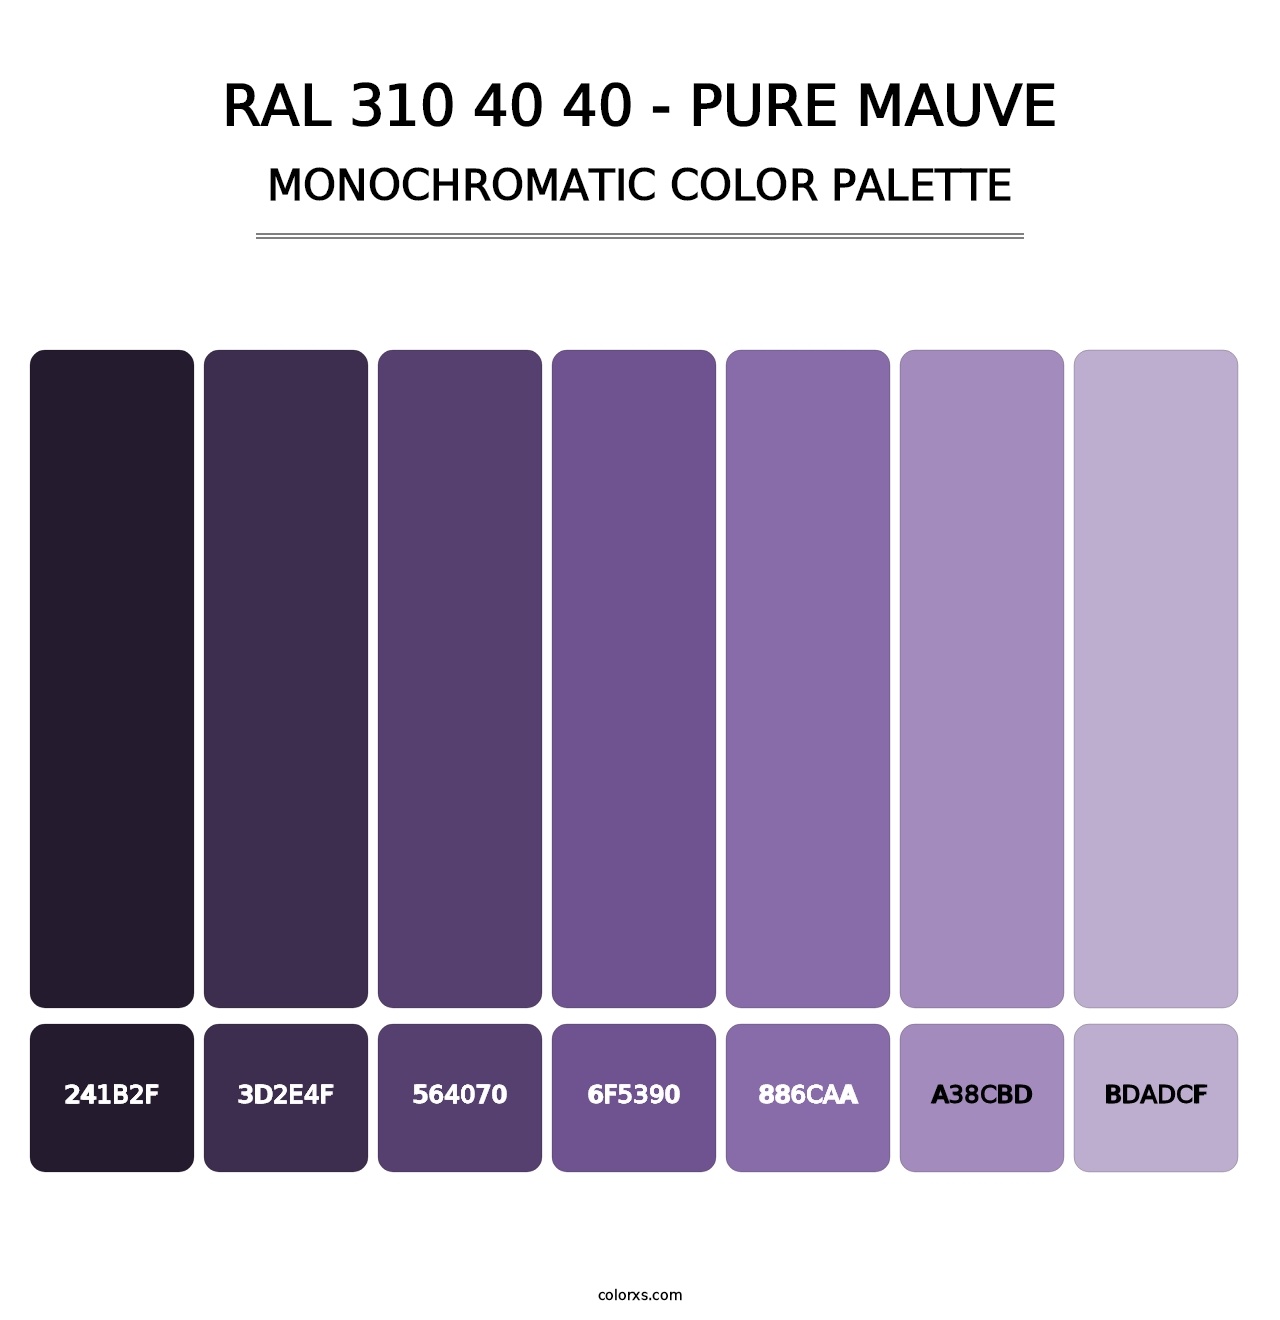 RAL 310 40 40 - Pure Mauve - Monochromatic Color Palette